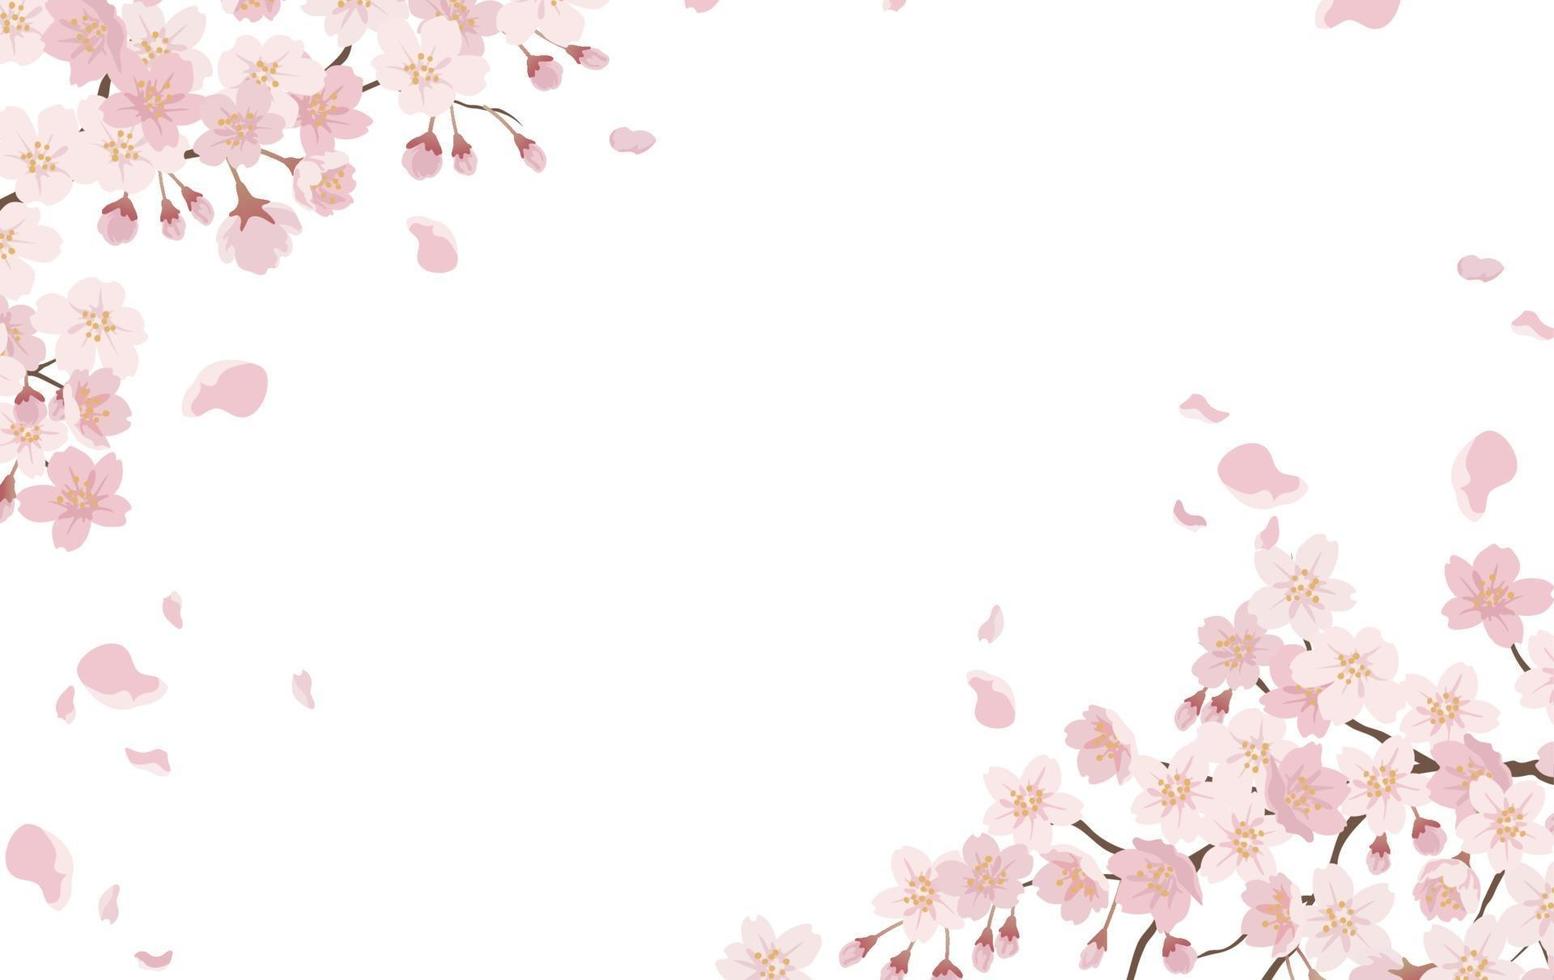 sfondo floreale con fiori di ciliegio in piena fioritura isolato su uno sfondo bianco. vettore